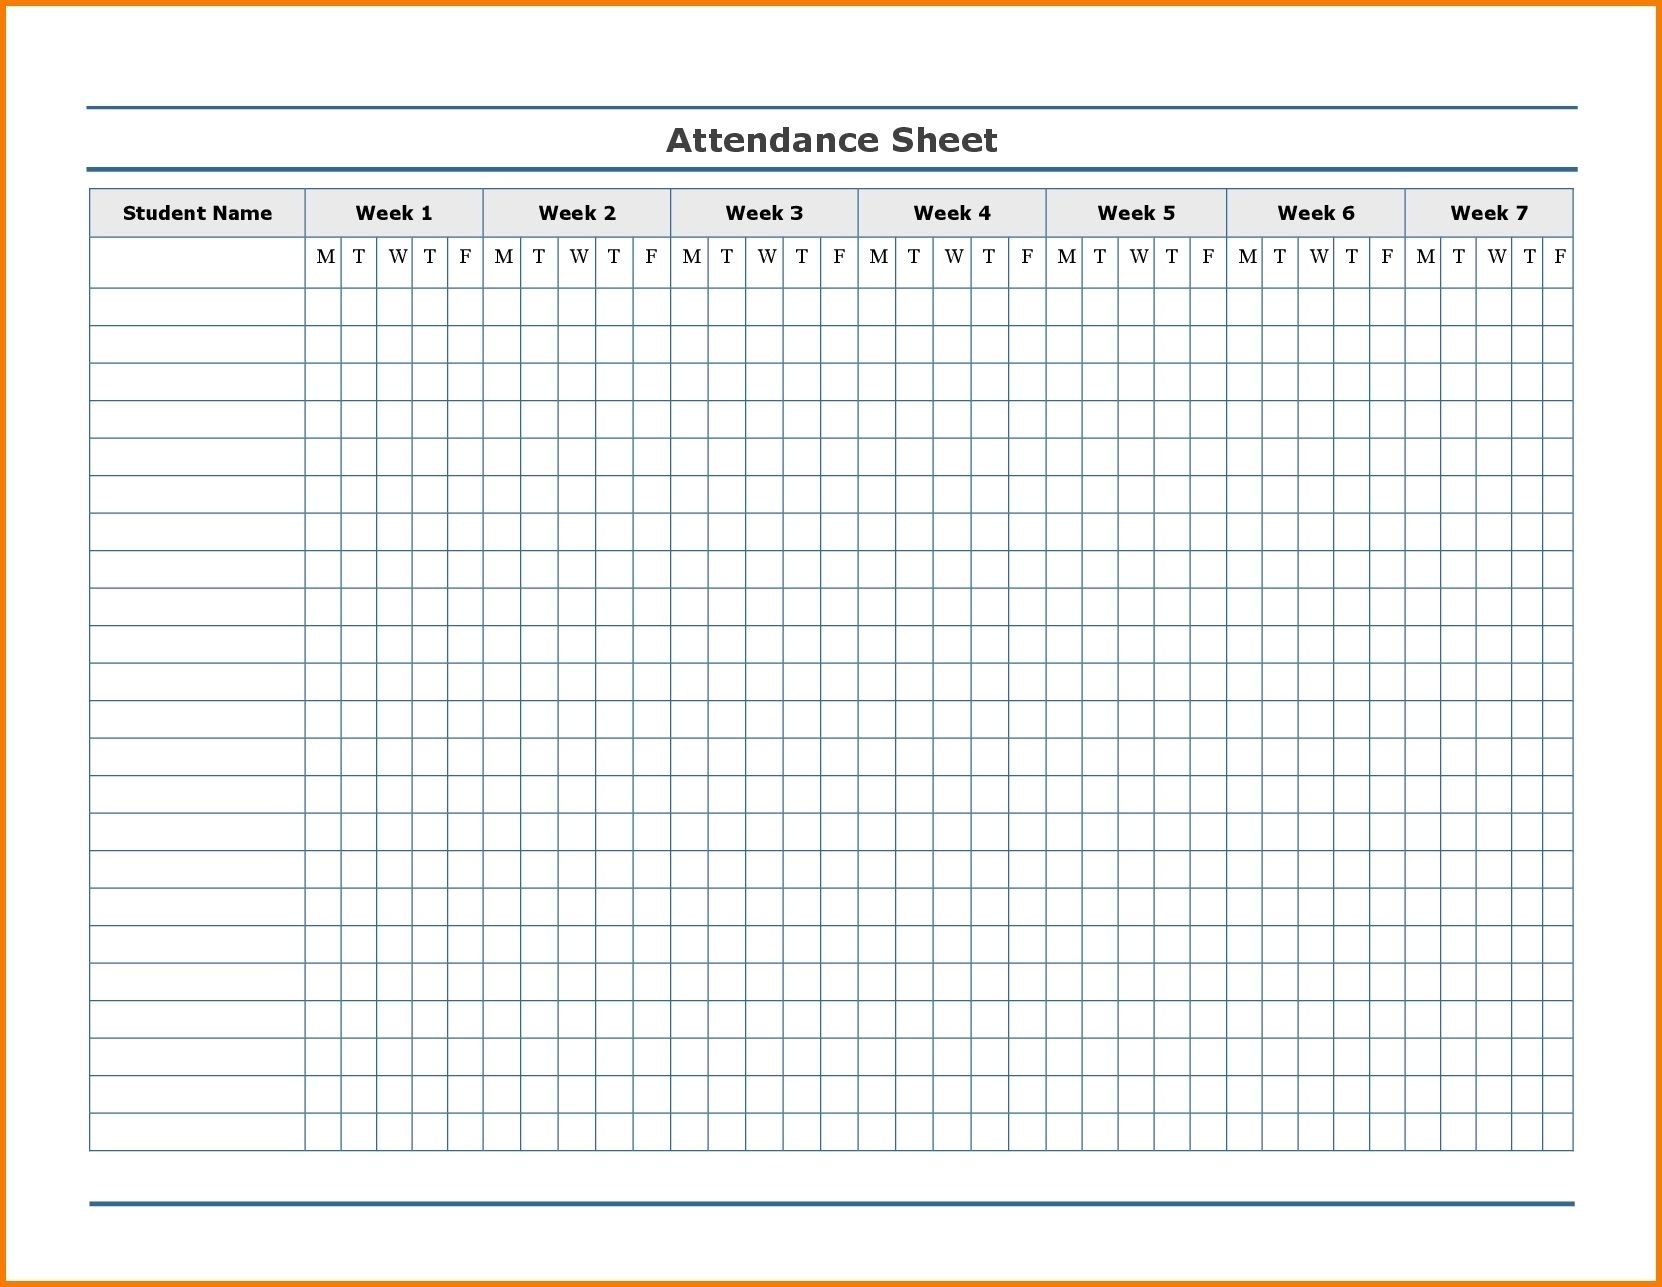 Free Employee Attendance Calendar | Employee Tracker with Employee Attendance Calendar 2020 Printable